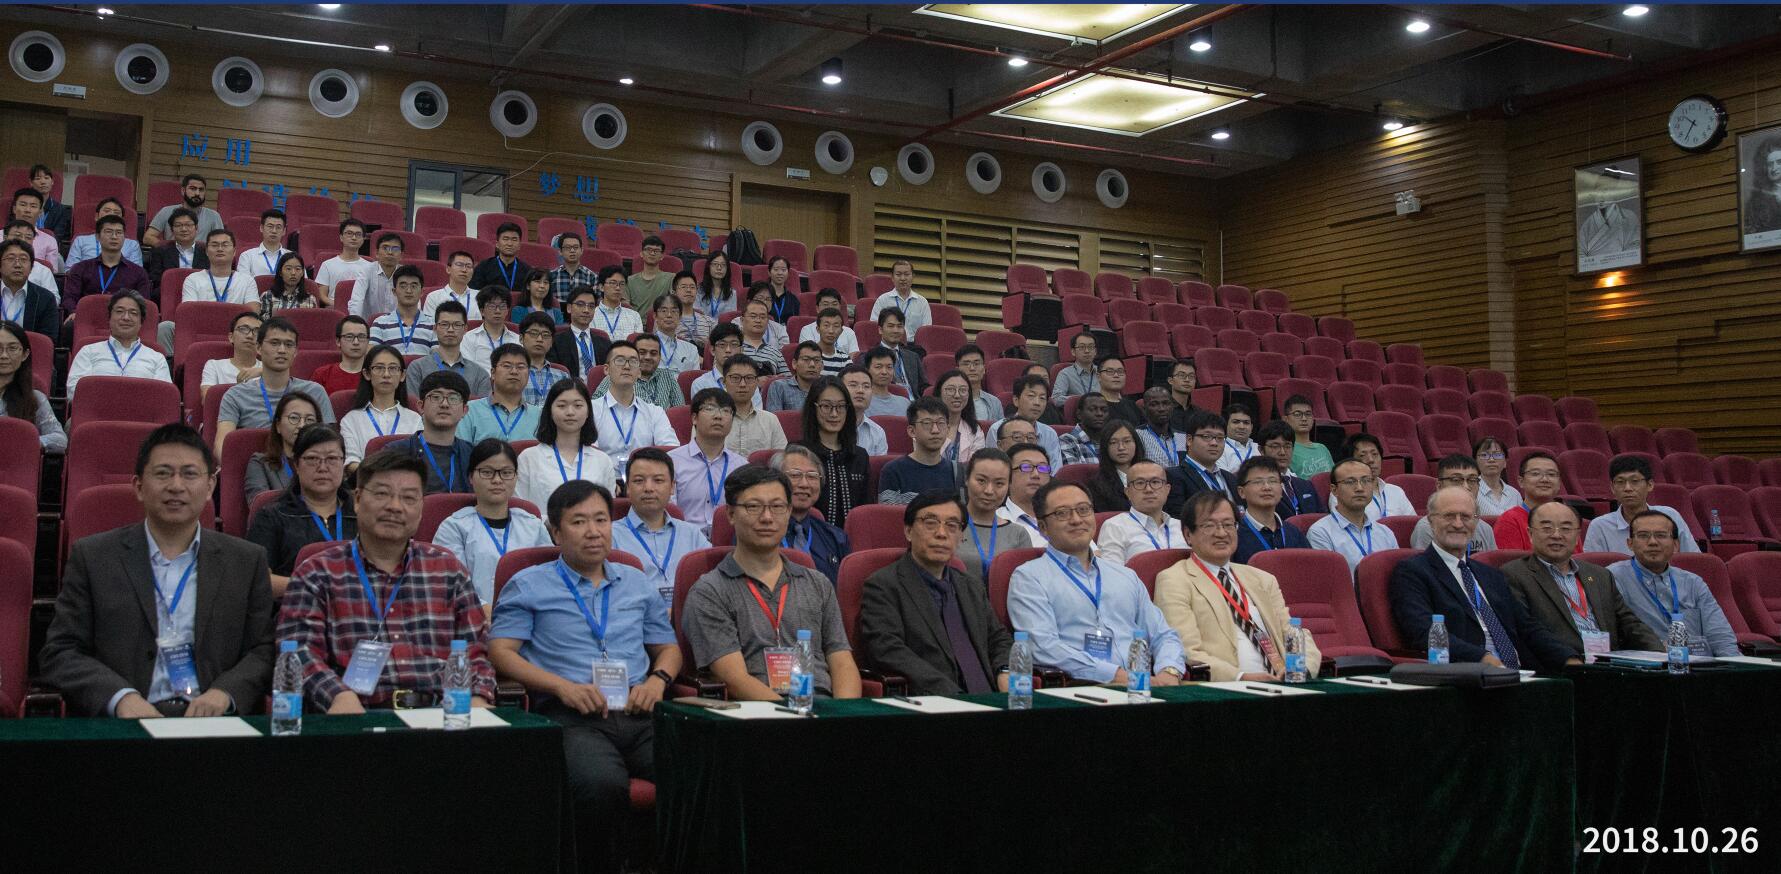 2018年IEEE类生命机器人与仿生系统国际会议在深圳先进院举办